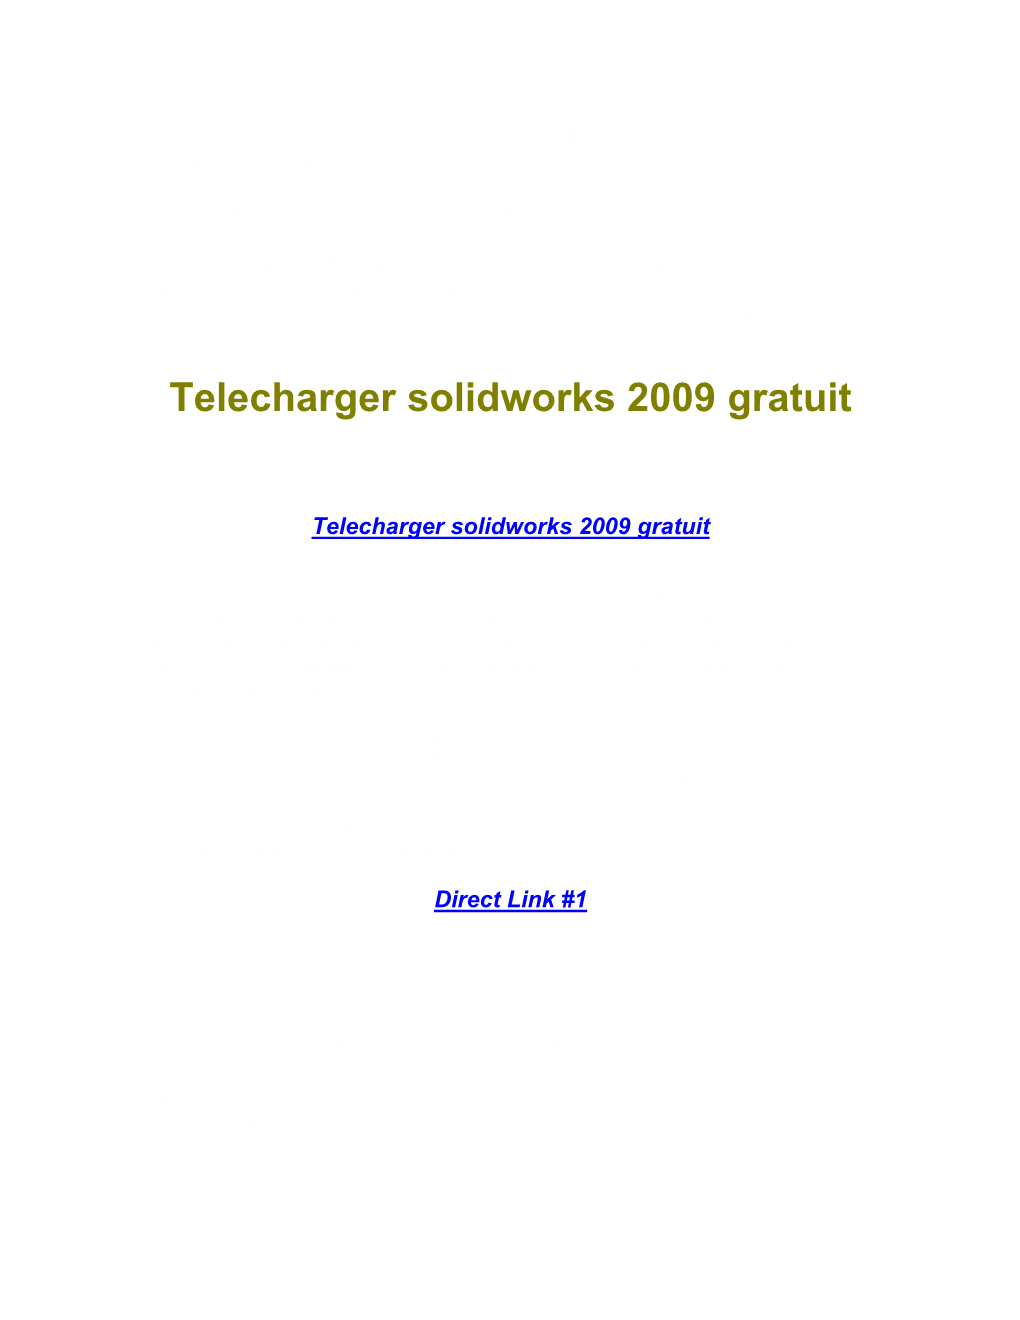 Telecharger Solidworks 2009 Gratuit